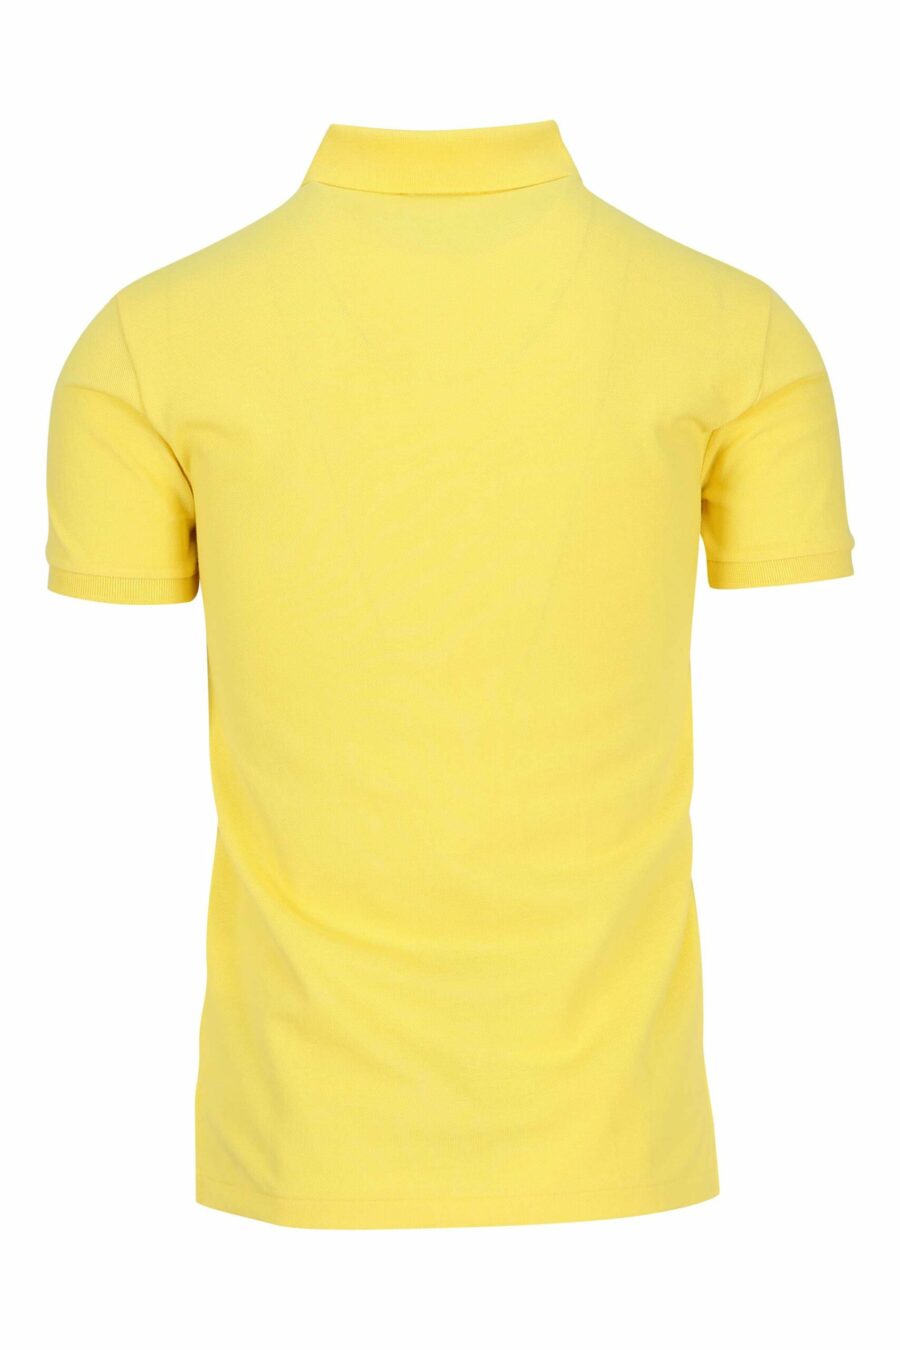 T-shirt amarela e azul com mini logótipo "polo" - 3616535972186 1 à escala